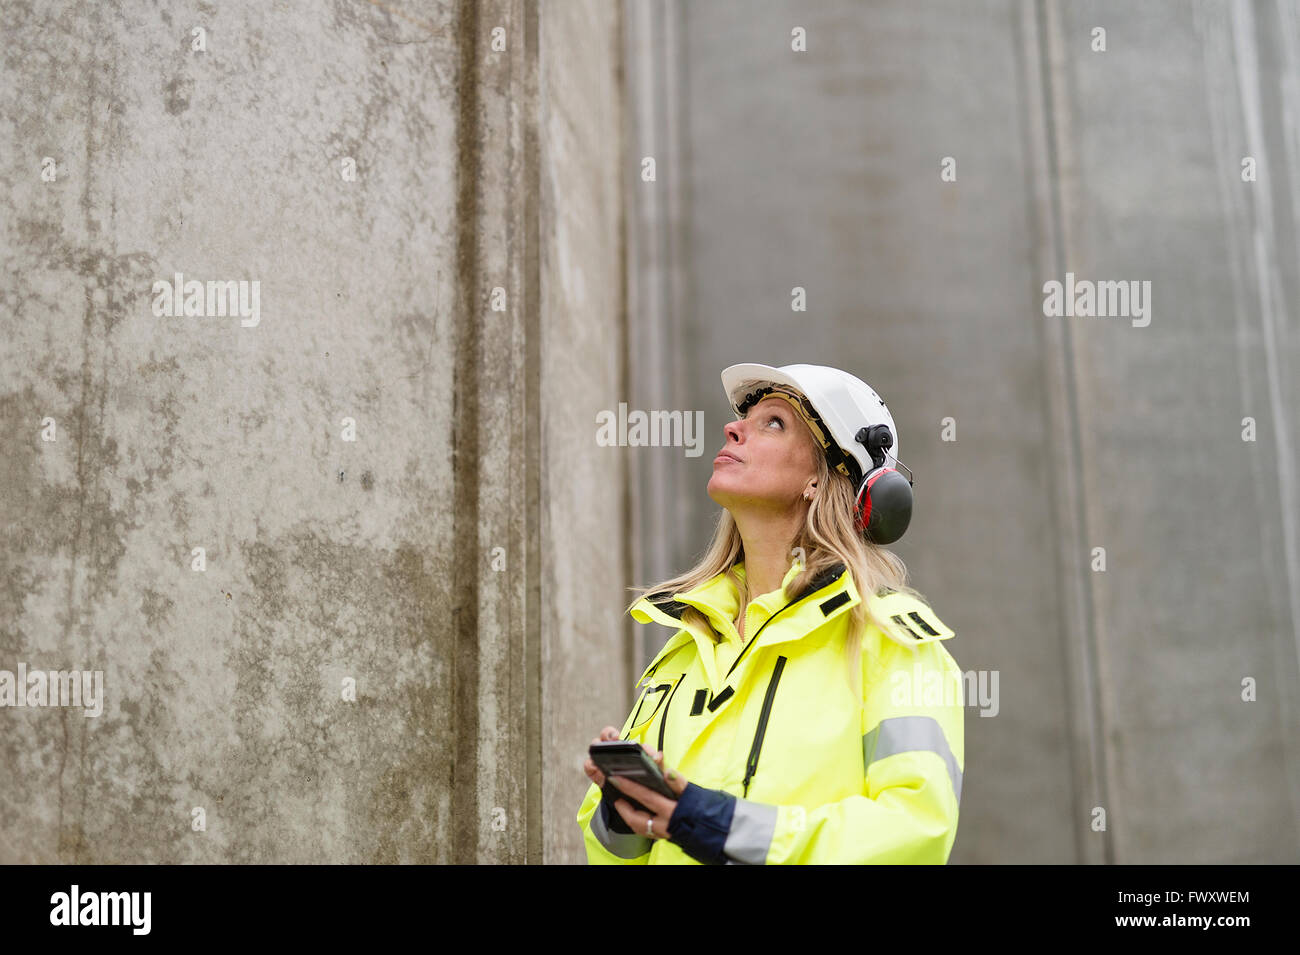 Suecia, Vastmanland, ingeniero que trabaja en el sitio de construcción Foto de stock